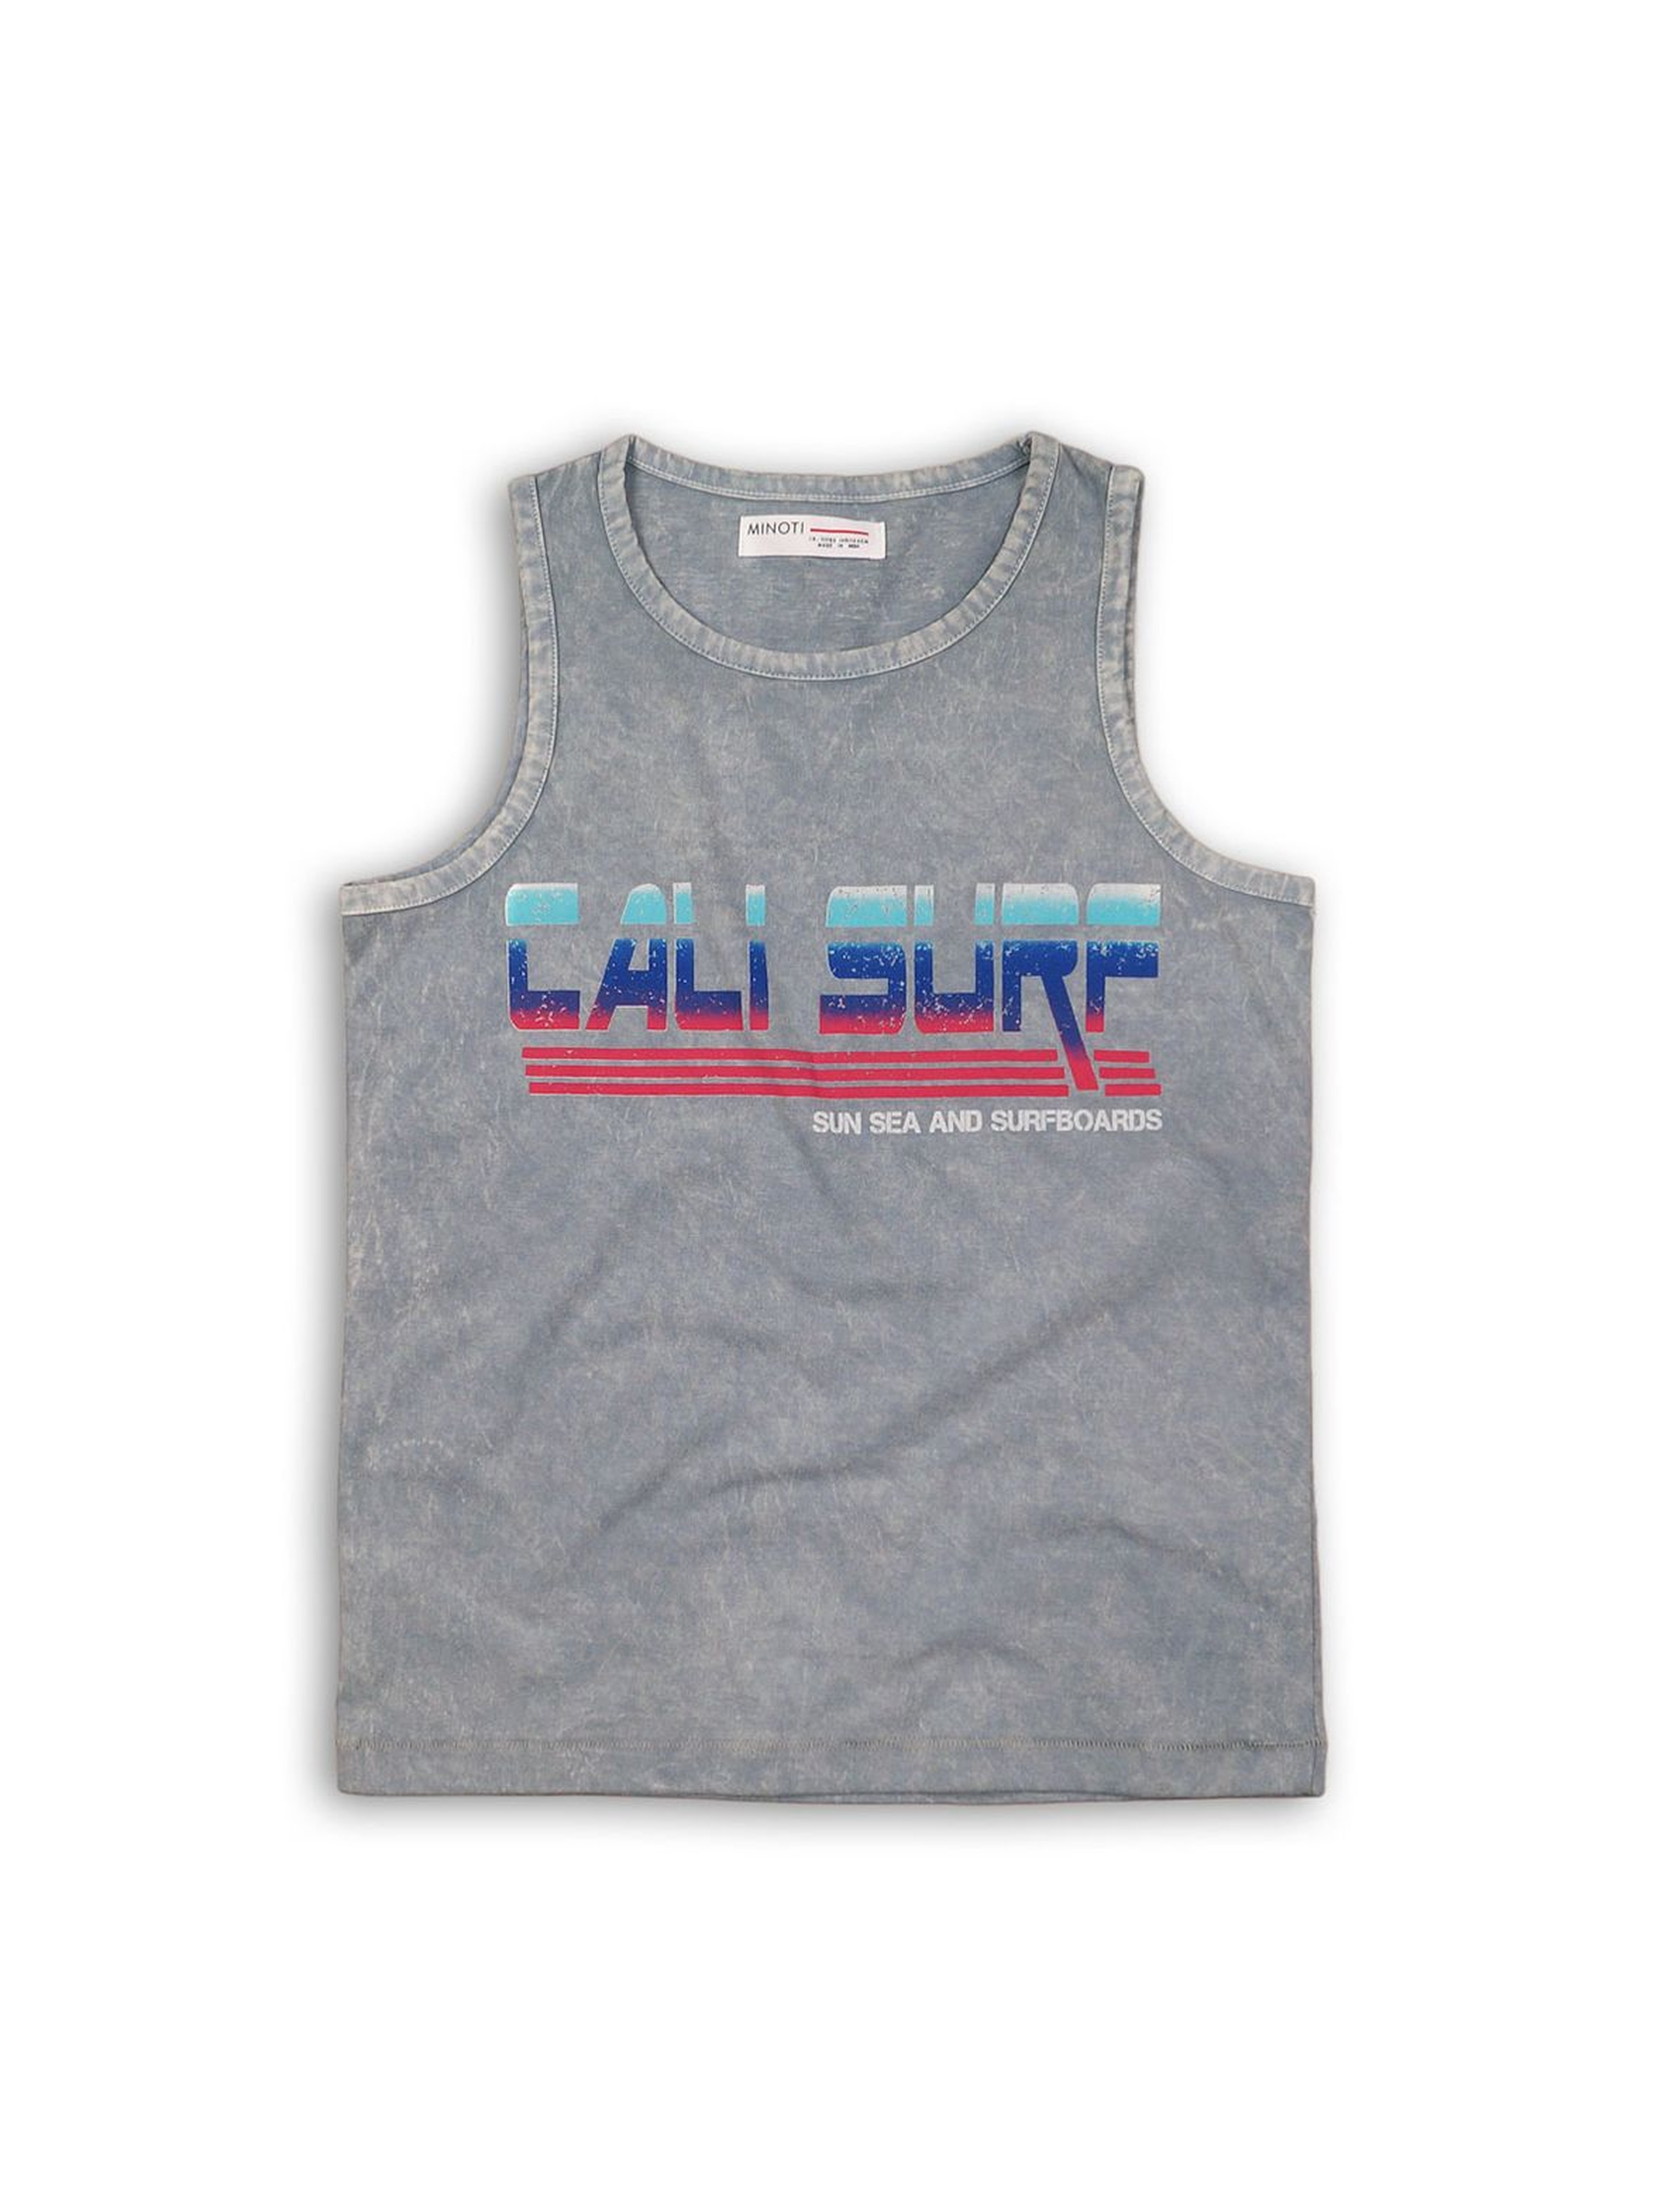 Szara bluzka na ramiączka z napisem "Cali surf"